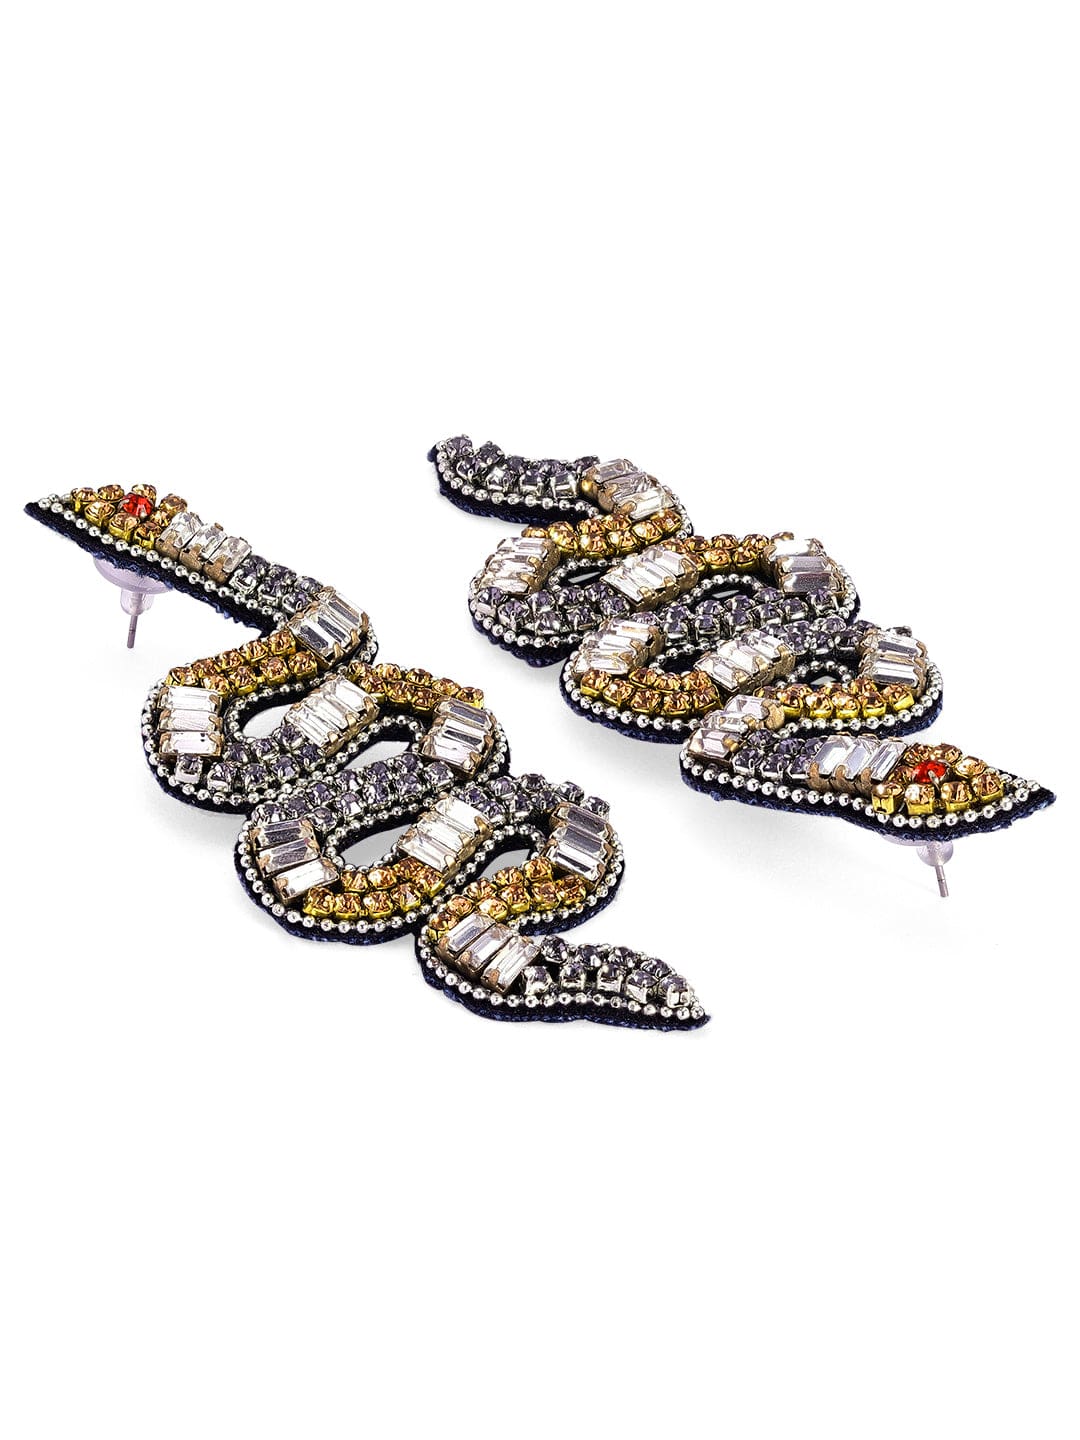 Rubans Voguish Dark Coloured Beaded Snake Earrings. Earrings